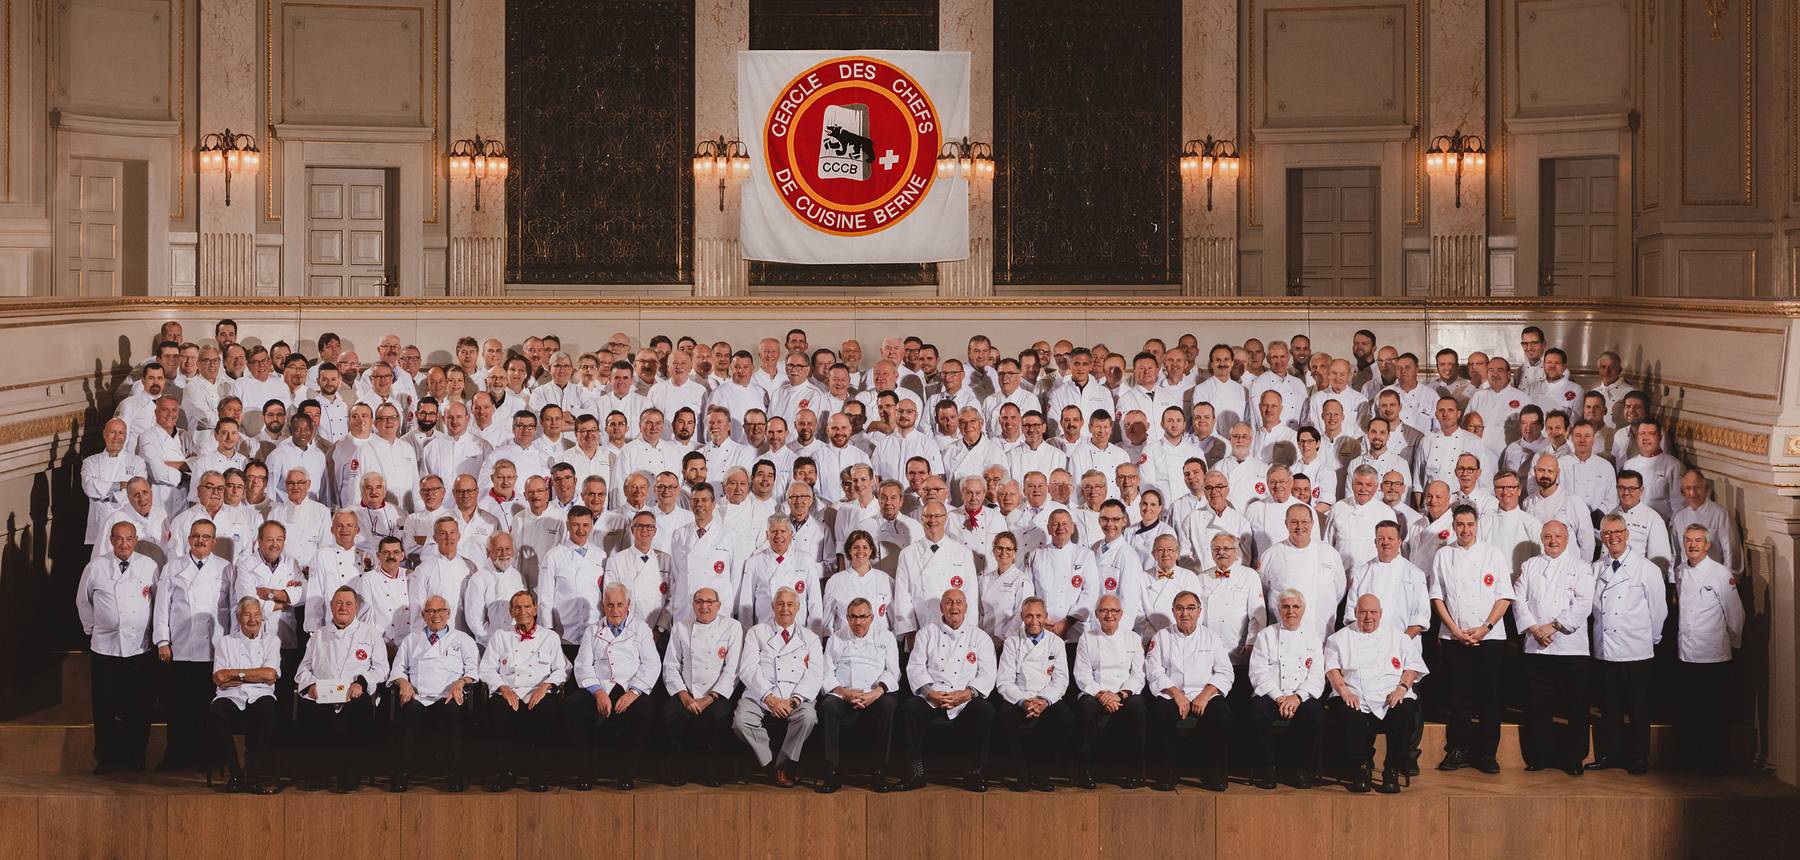 Cercle des Chefs de Cuisine Bern